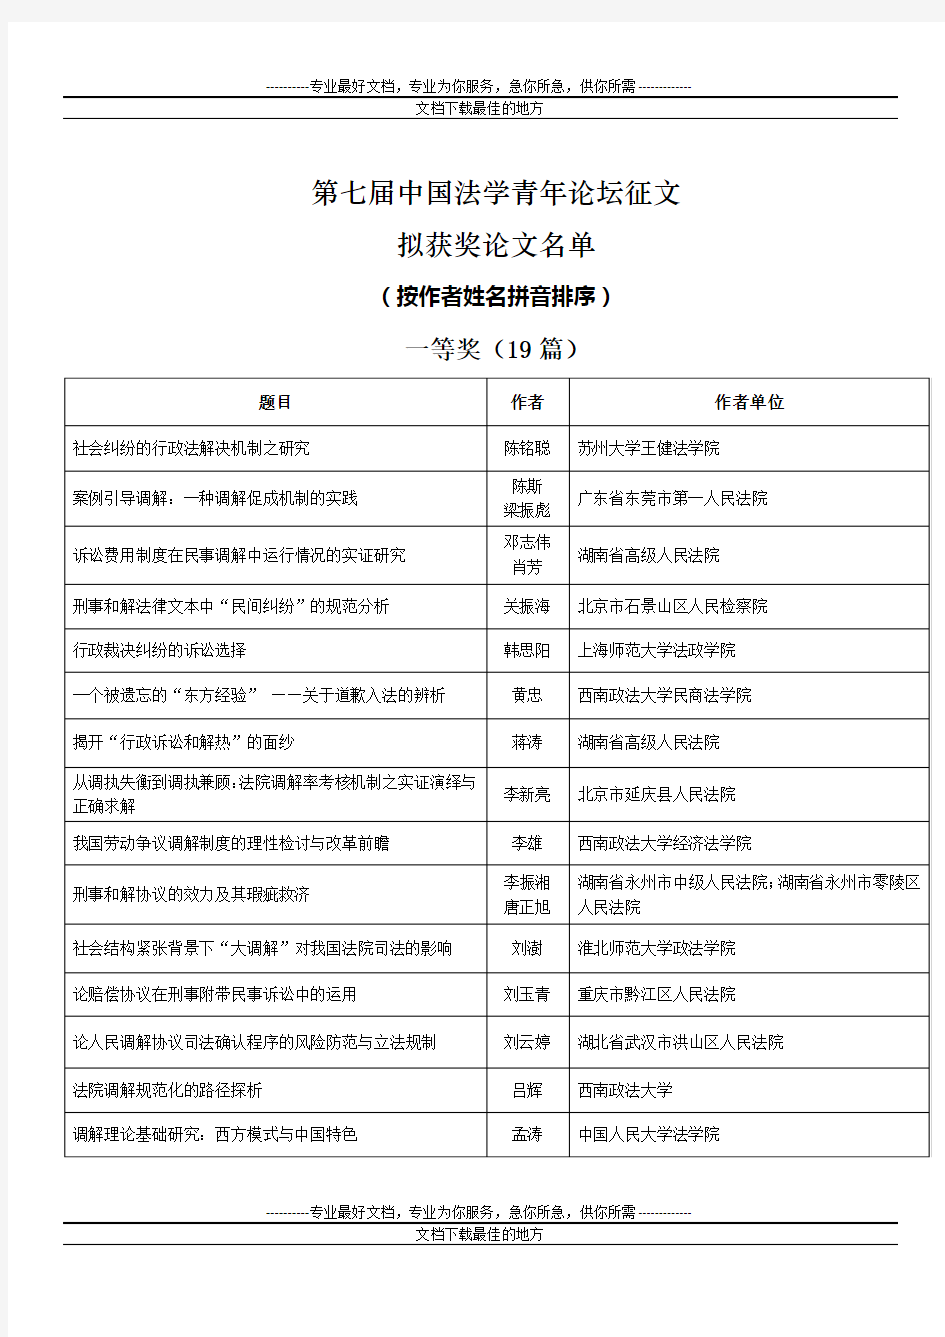 第七届中国法学青年论坛征文拟获奖论文名单